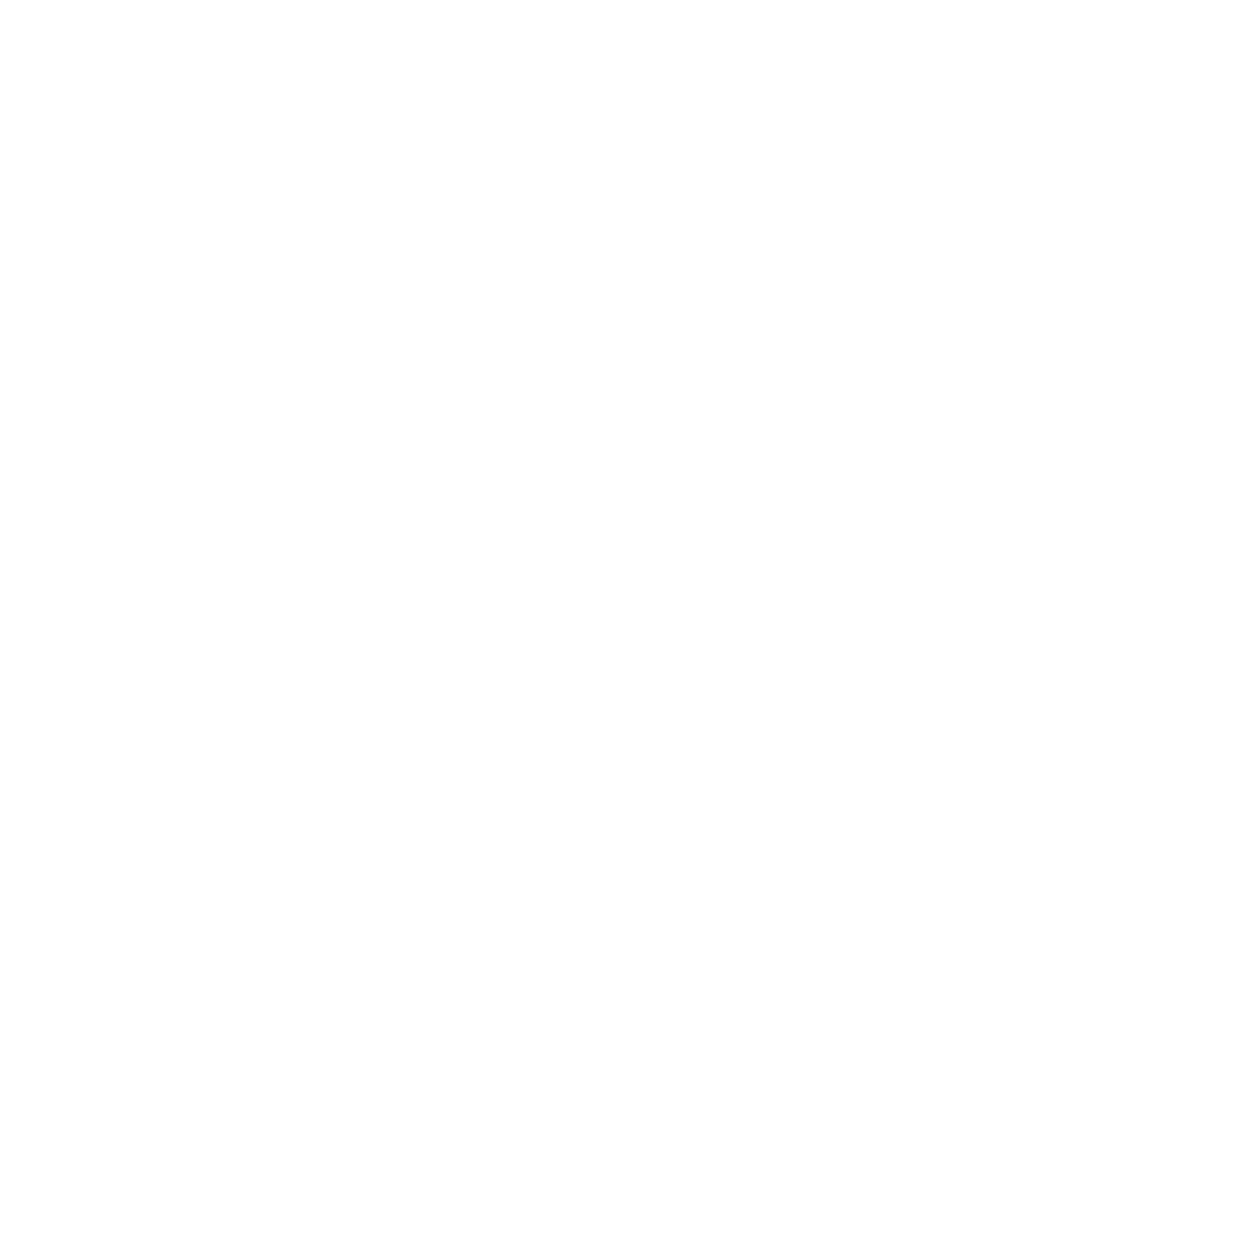 U-CAN DYNATEX INC.